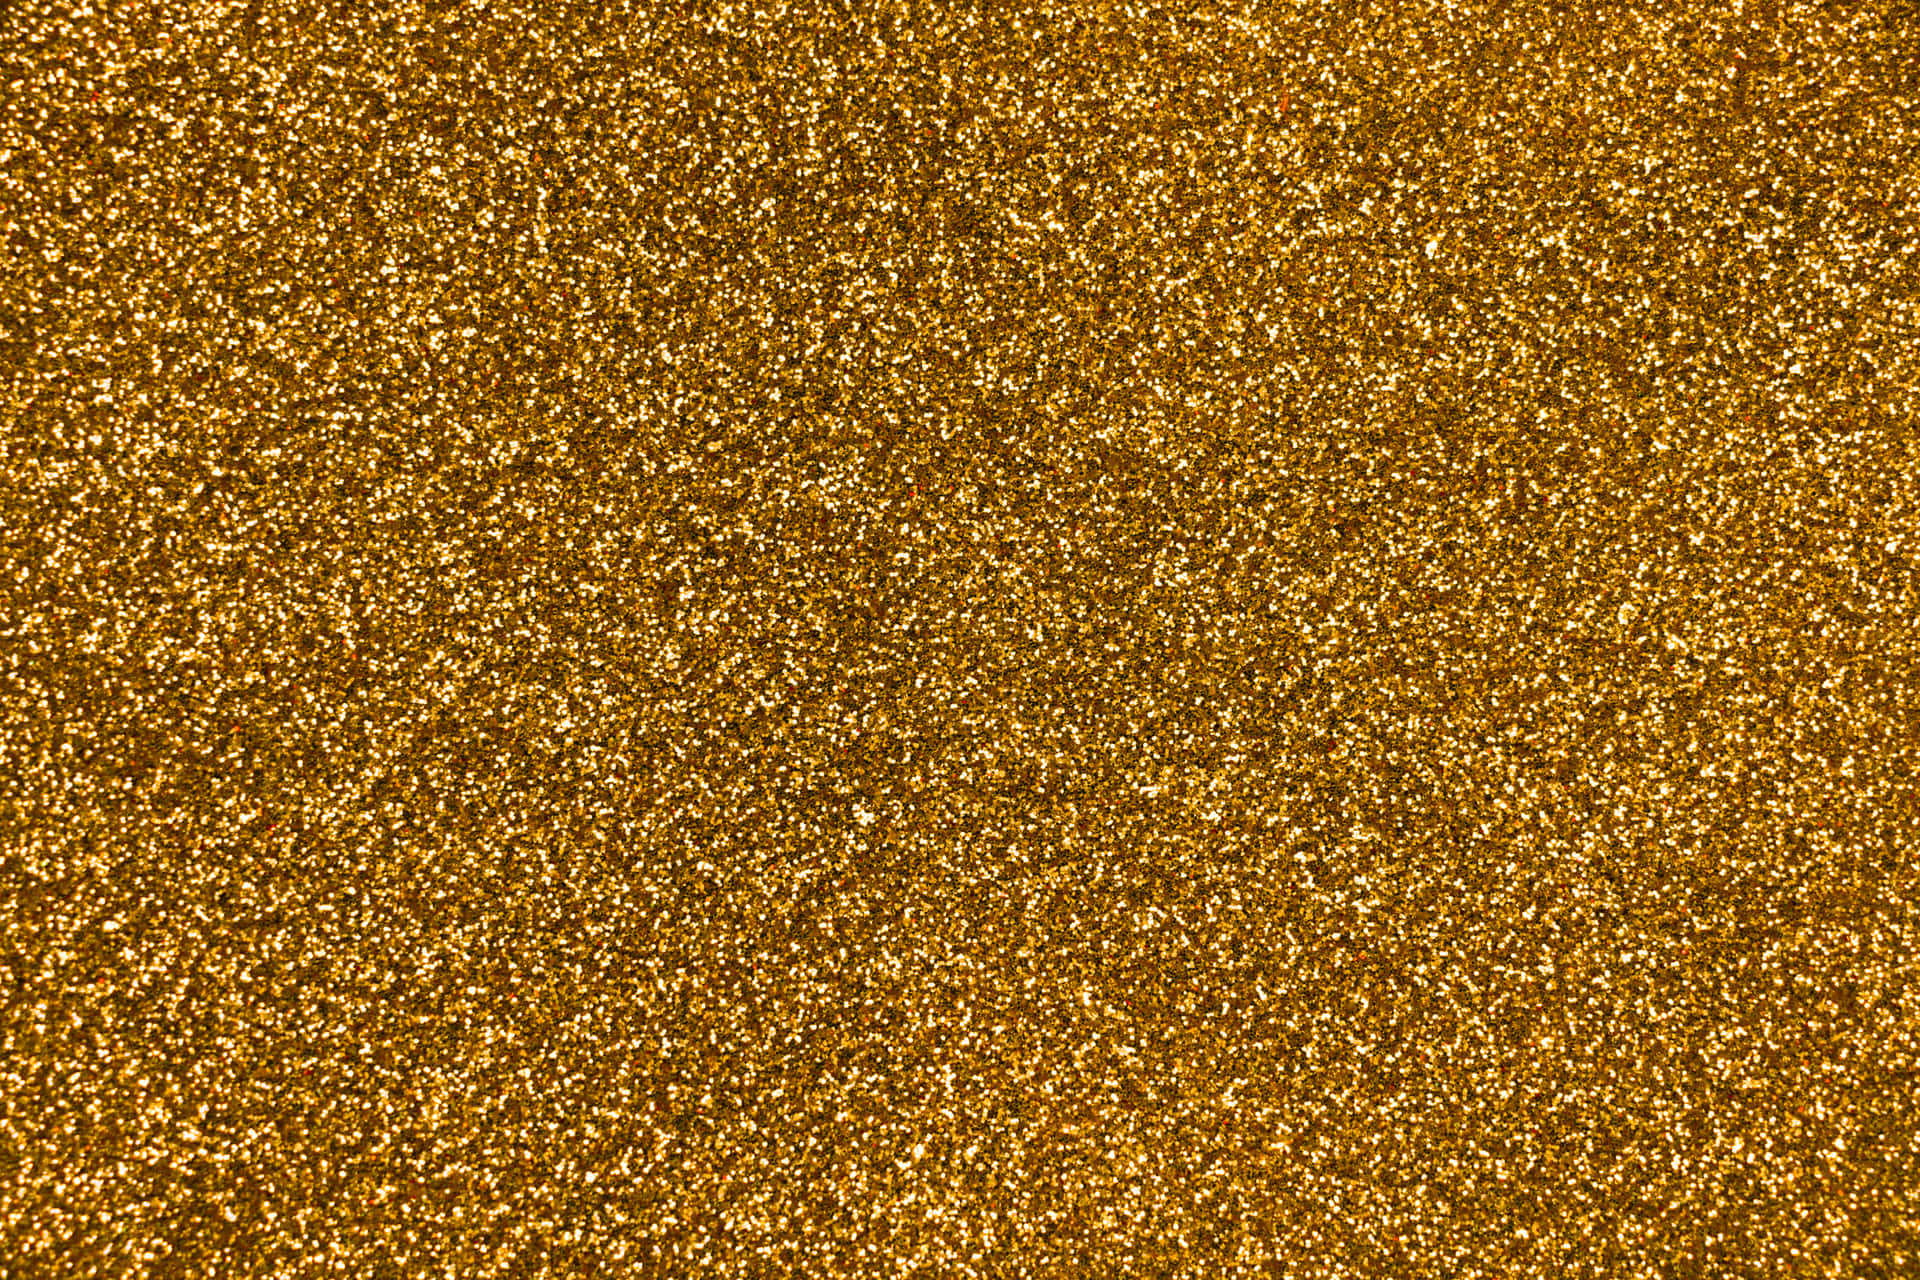 Shiny Gold Background